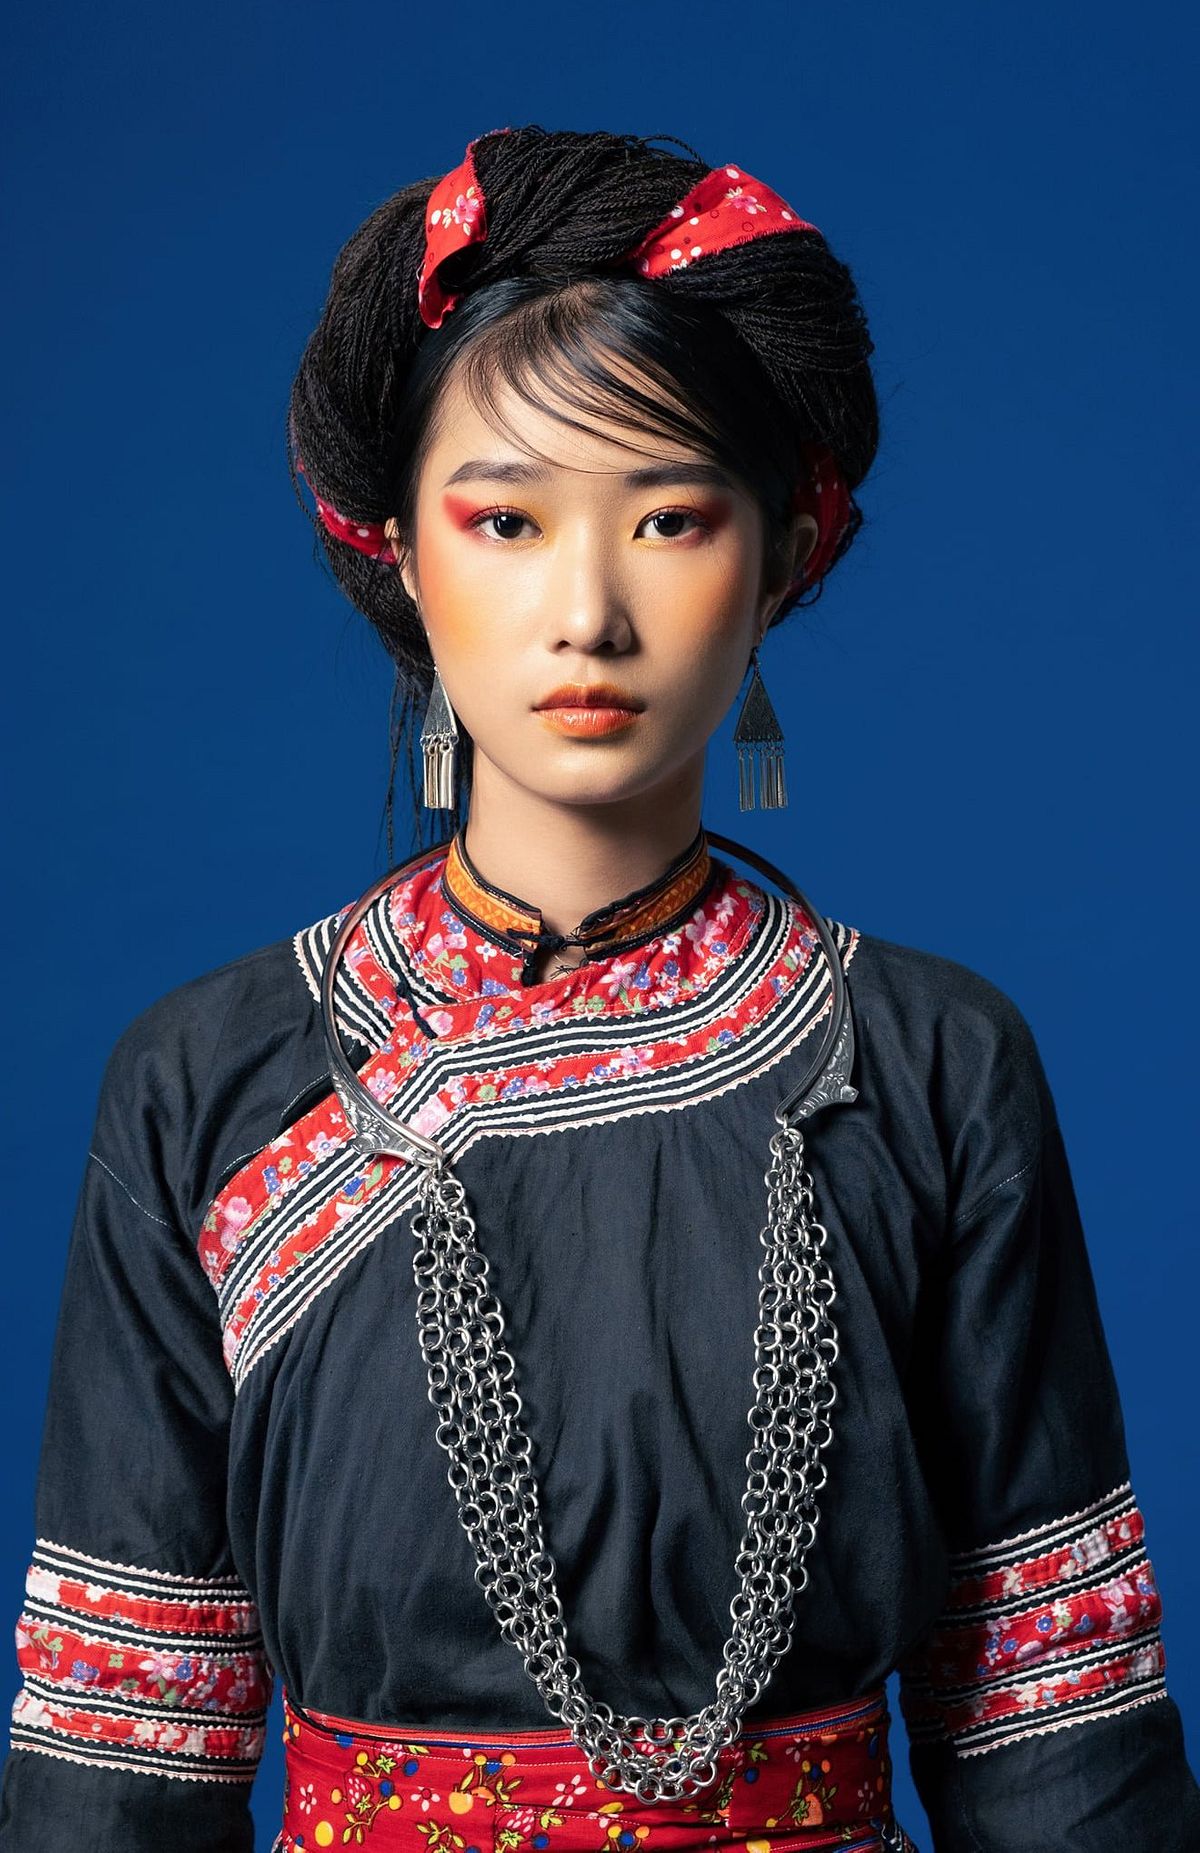 Nếu bạn yêu thích văn hóa dân tộc, hãy đến xem bức vẽ về trang phục dân tộc H\'Mông nam tuyệt đẹp này. Bức tranh sẽ giúp bạn trải nghiệm vẻ đẹp của trang phục truyền thống với nhiều chi tiết tinh xảo và đậm chất văn hóa.